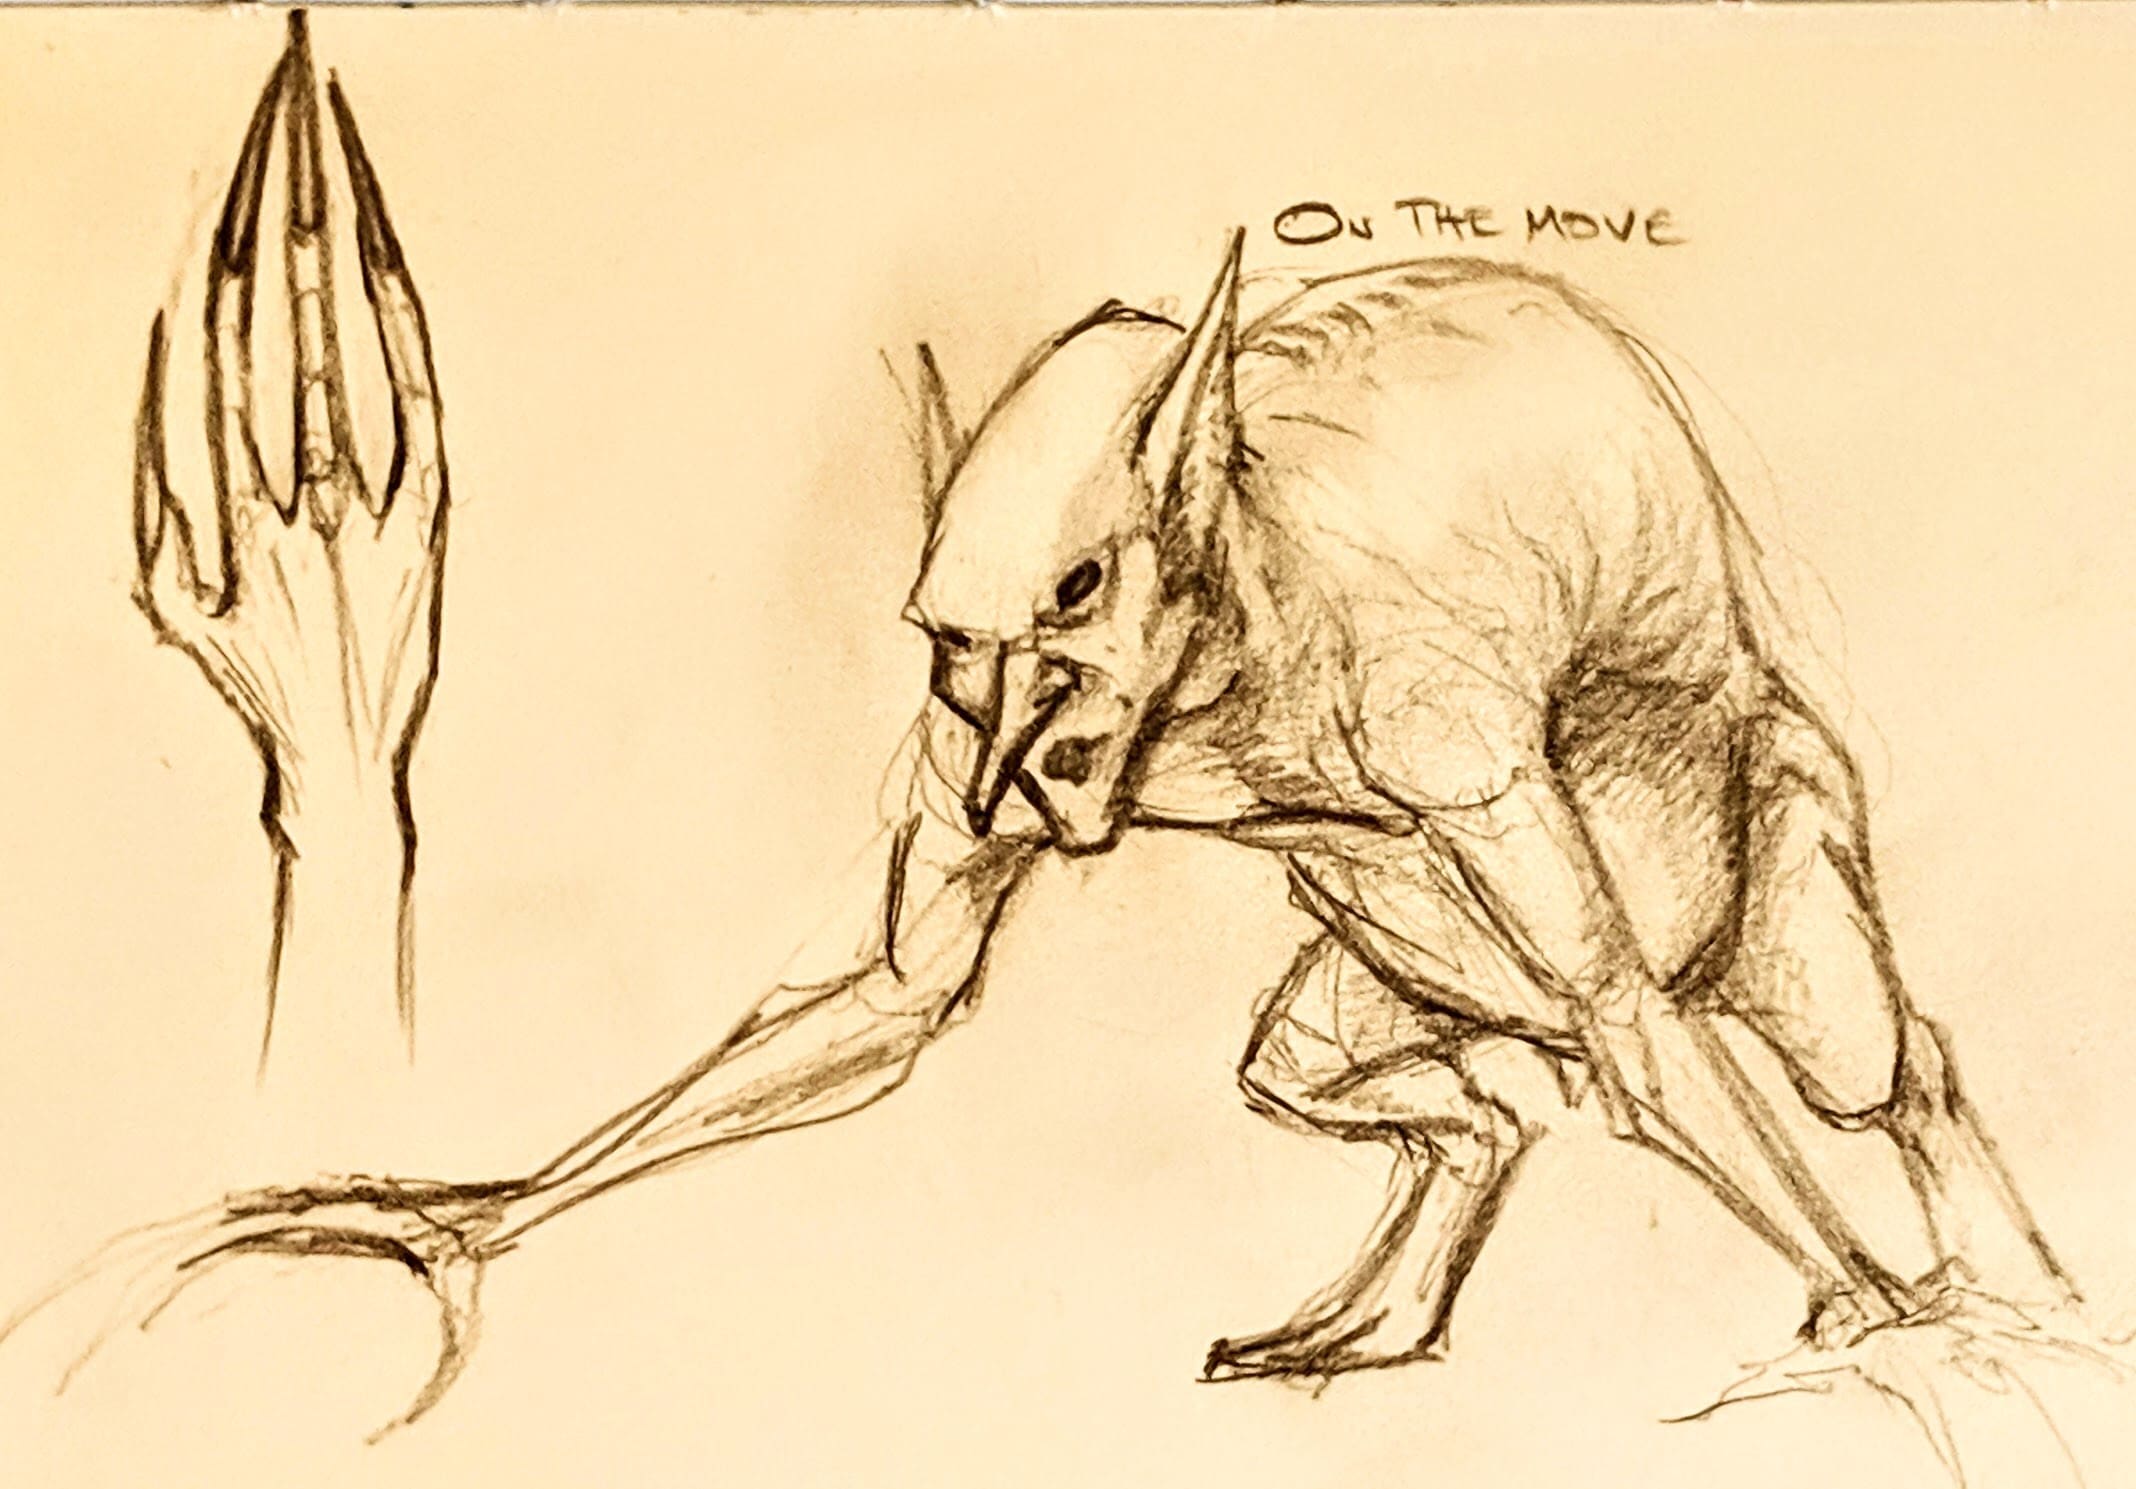 Goblin Sketch